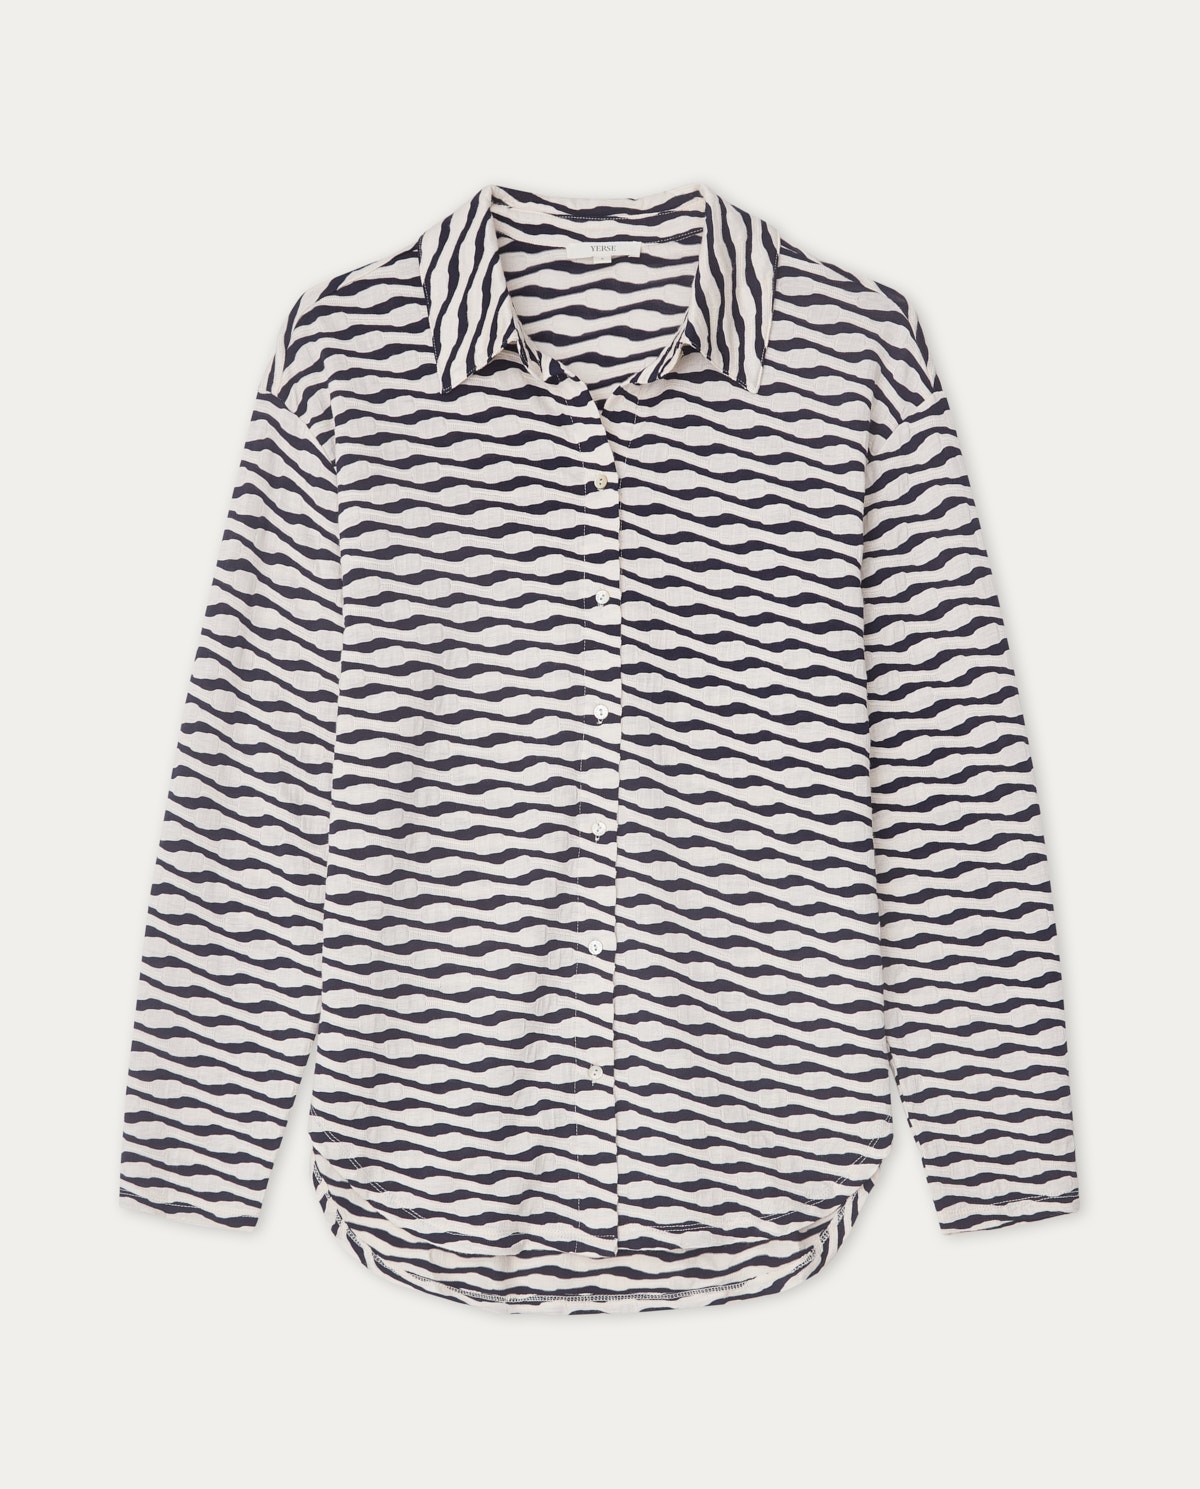 Jacquard knit shirt ecru and navy stripes 5